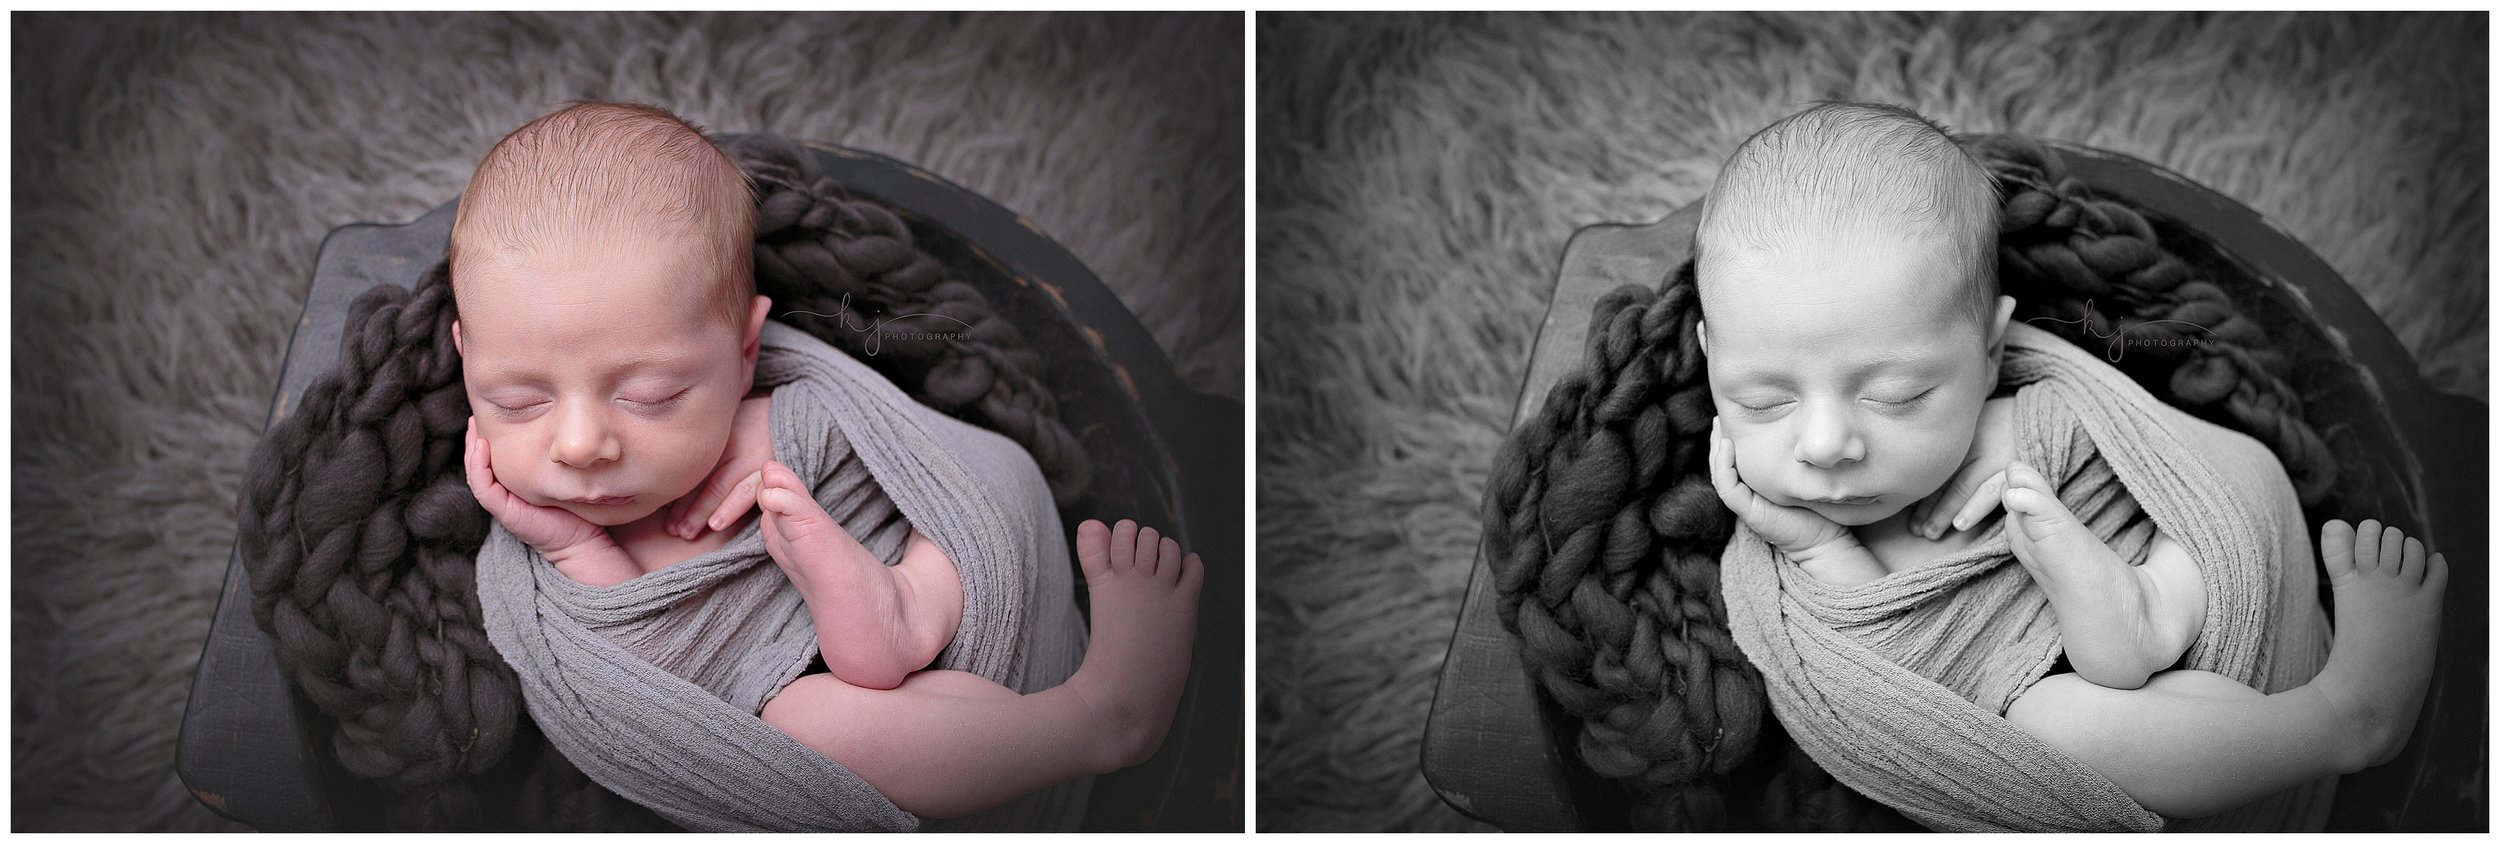 Kayla J Photography, newborn photographer, seattle newborn photograher, newborn boy, newborn studio photographer (3).jpg